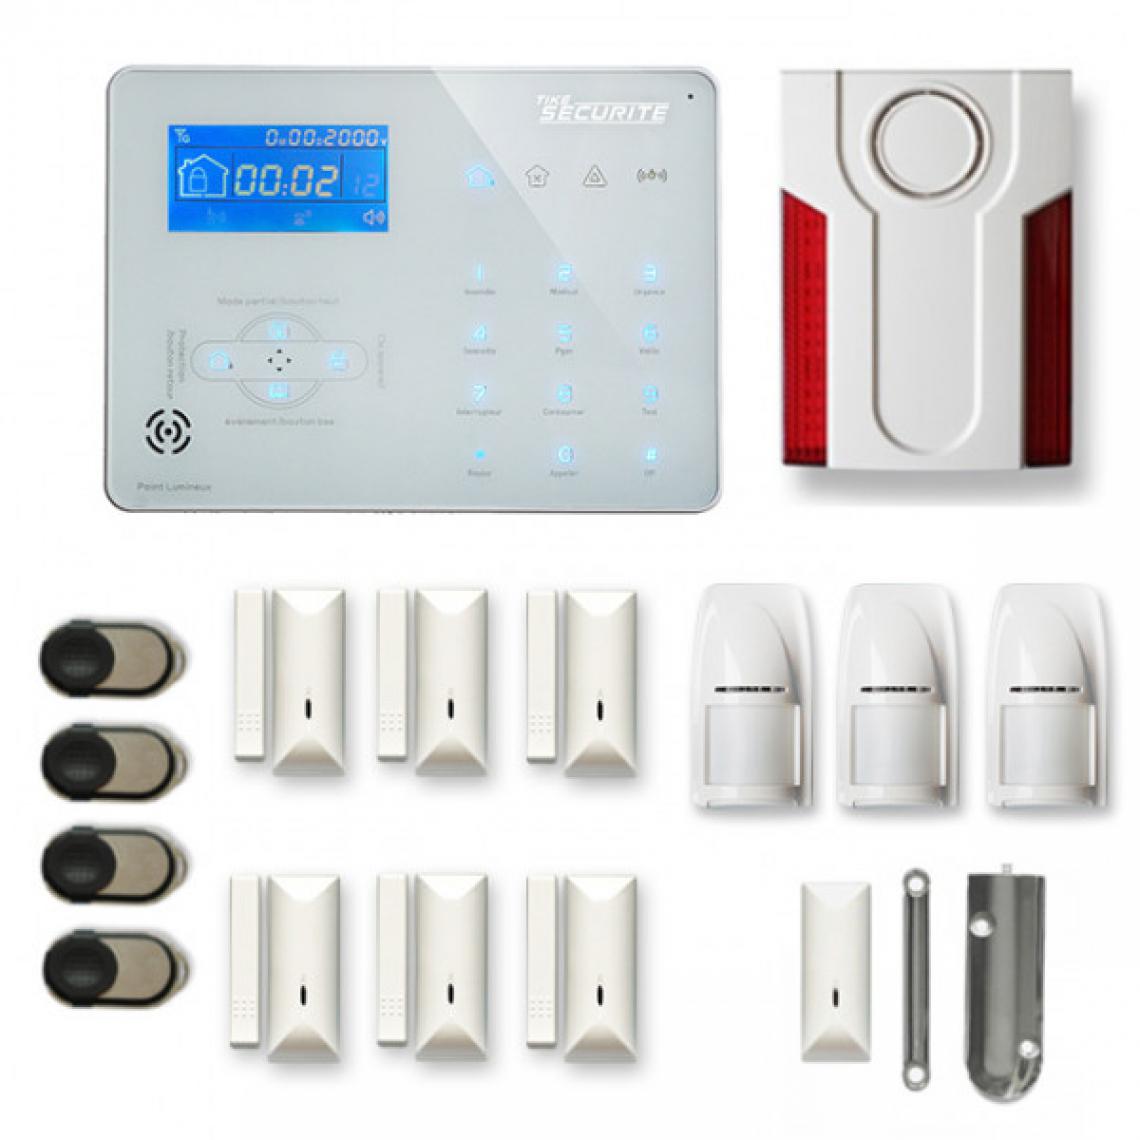 Tike Securite - Alarme maison sans fil ICE-B37 Compatible Box internet - Alarme connectée